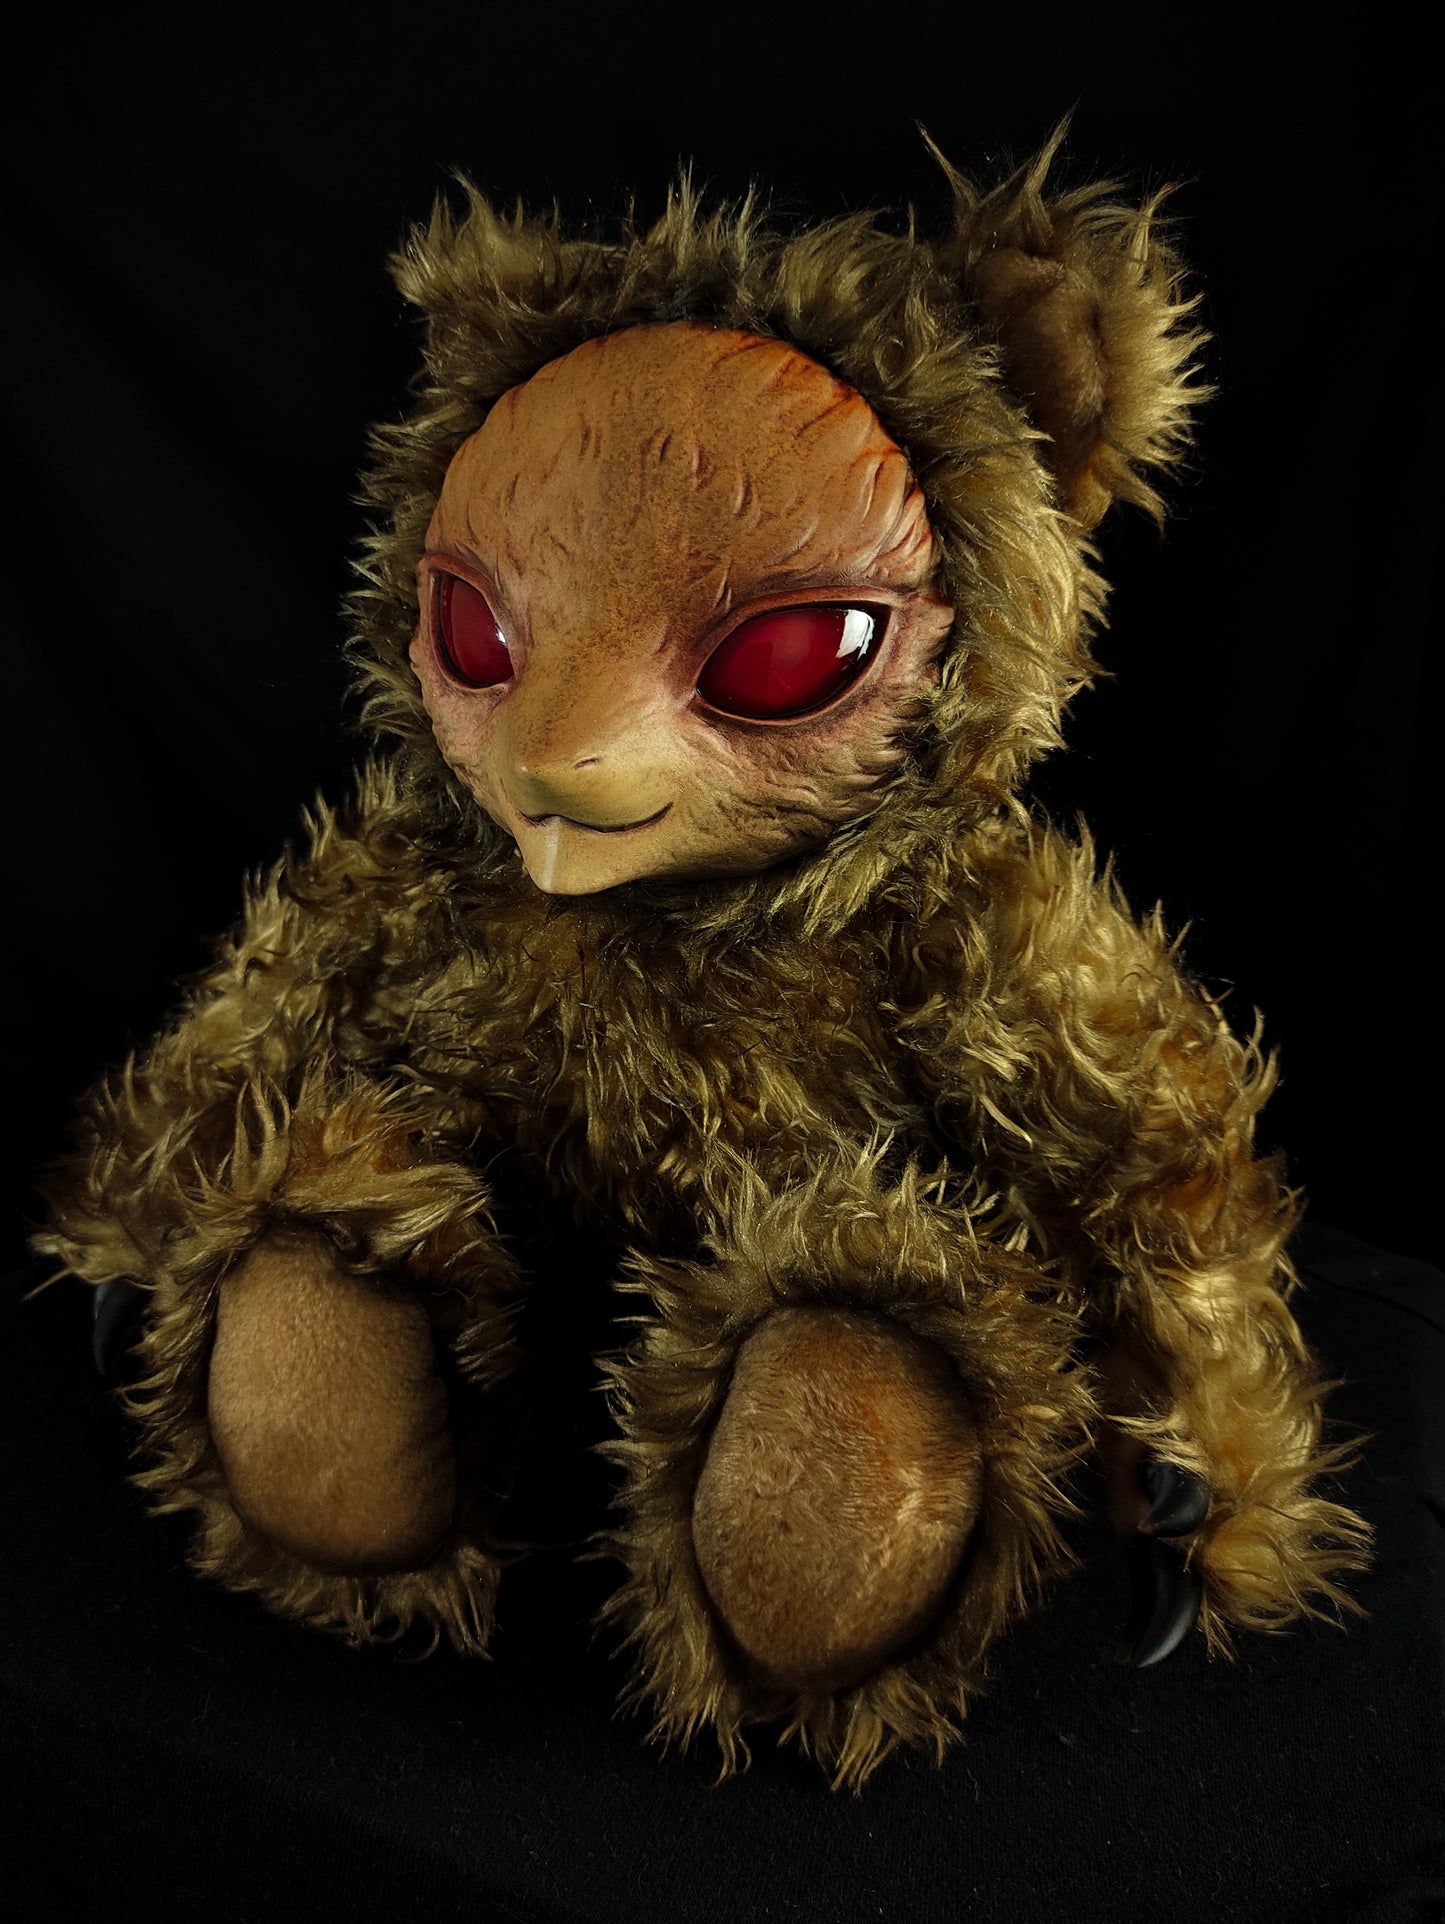 Vipal (Sunsetz Ver.) - Monster Art Doll Plush Toy